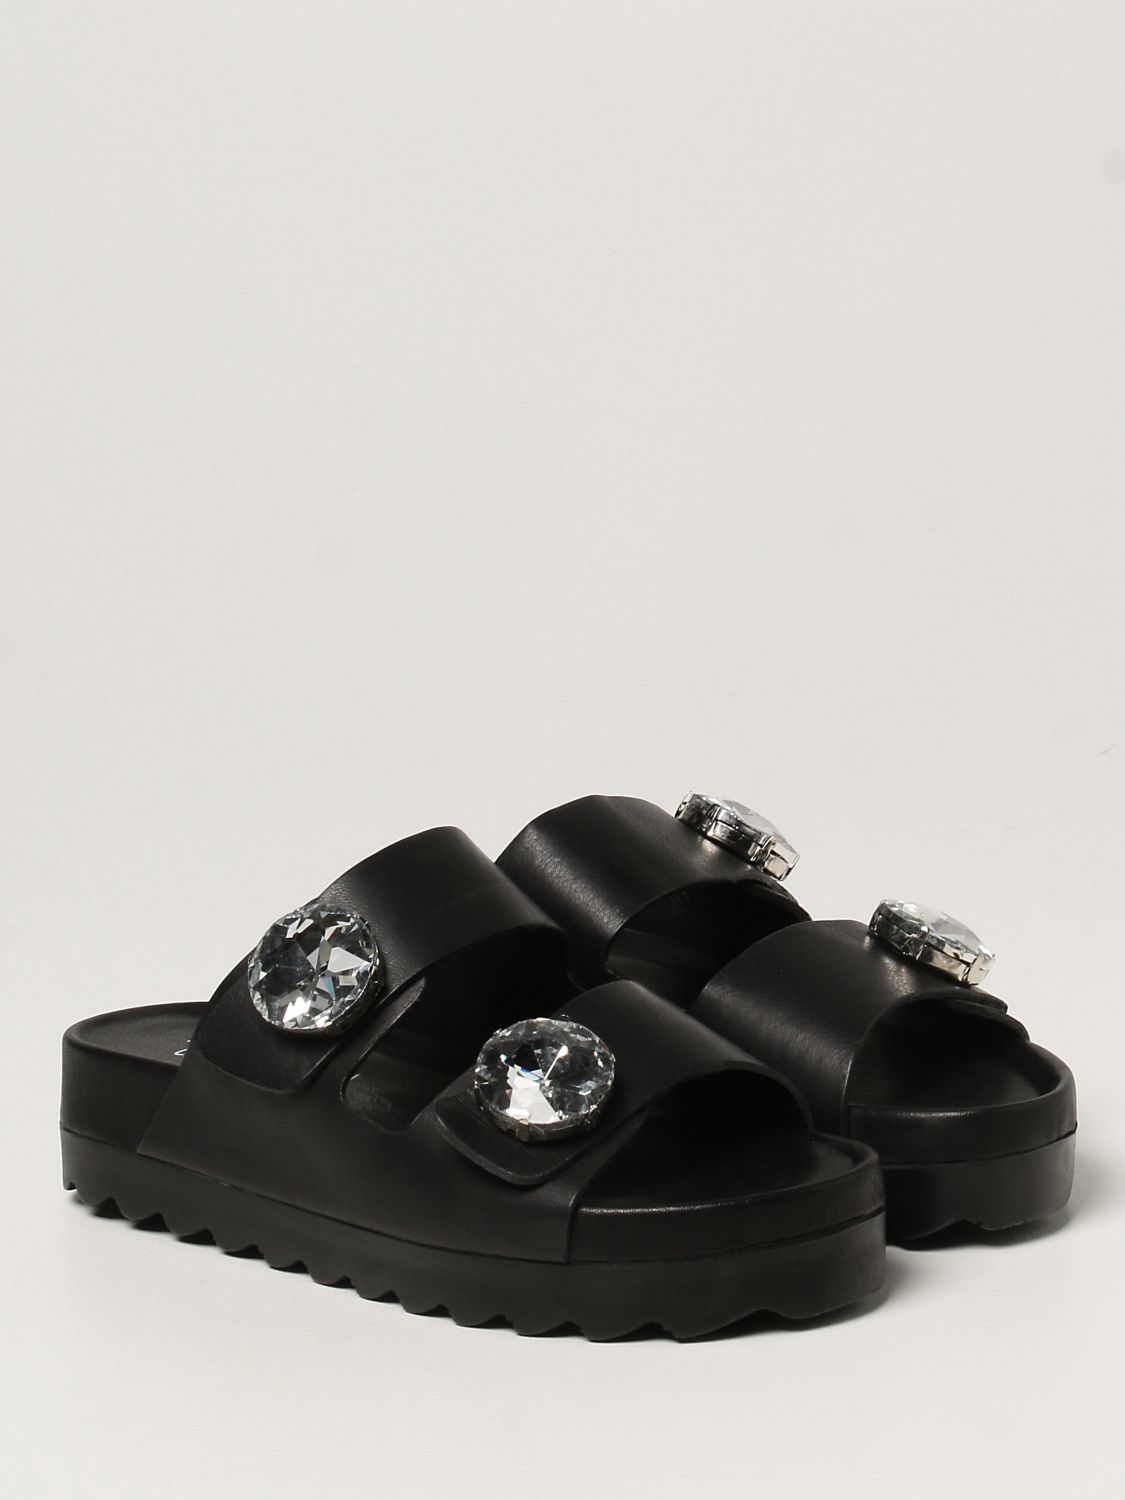 Sandales plates Inspiration Concrete: Chaussures femme Inspiration Concrete noir 2